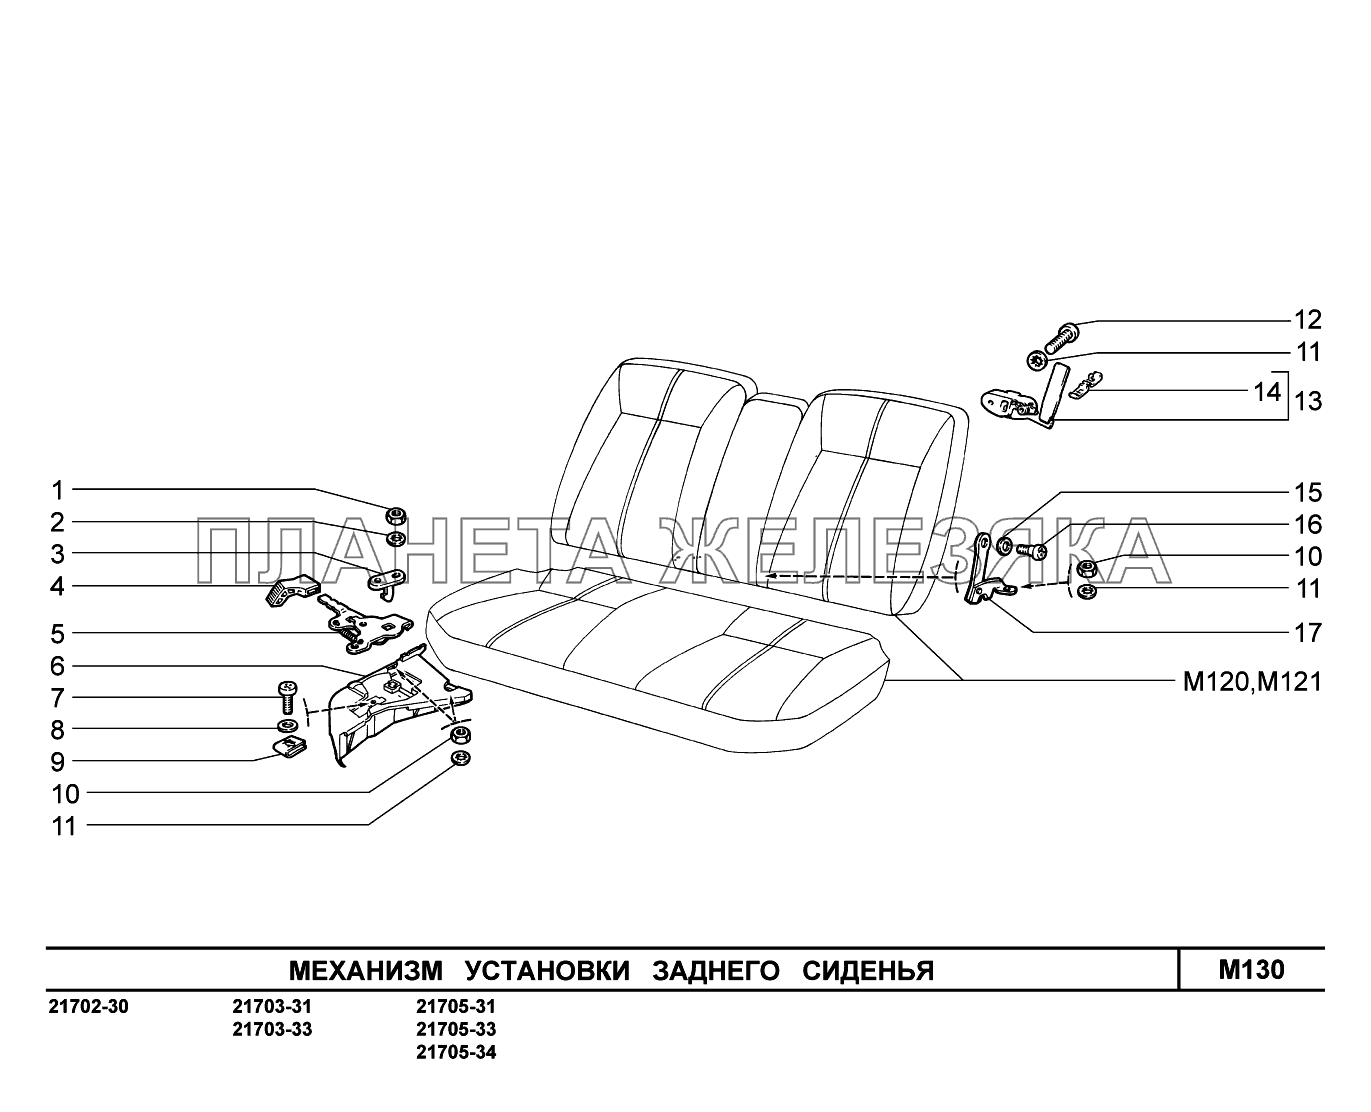 M130. Механизм установки заднего сиденья ВАЗ-2170 